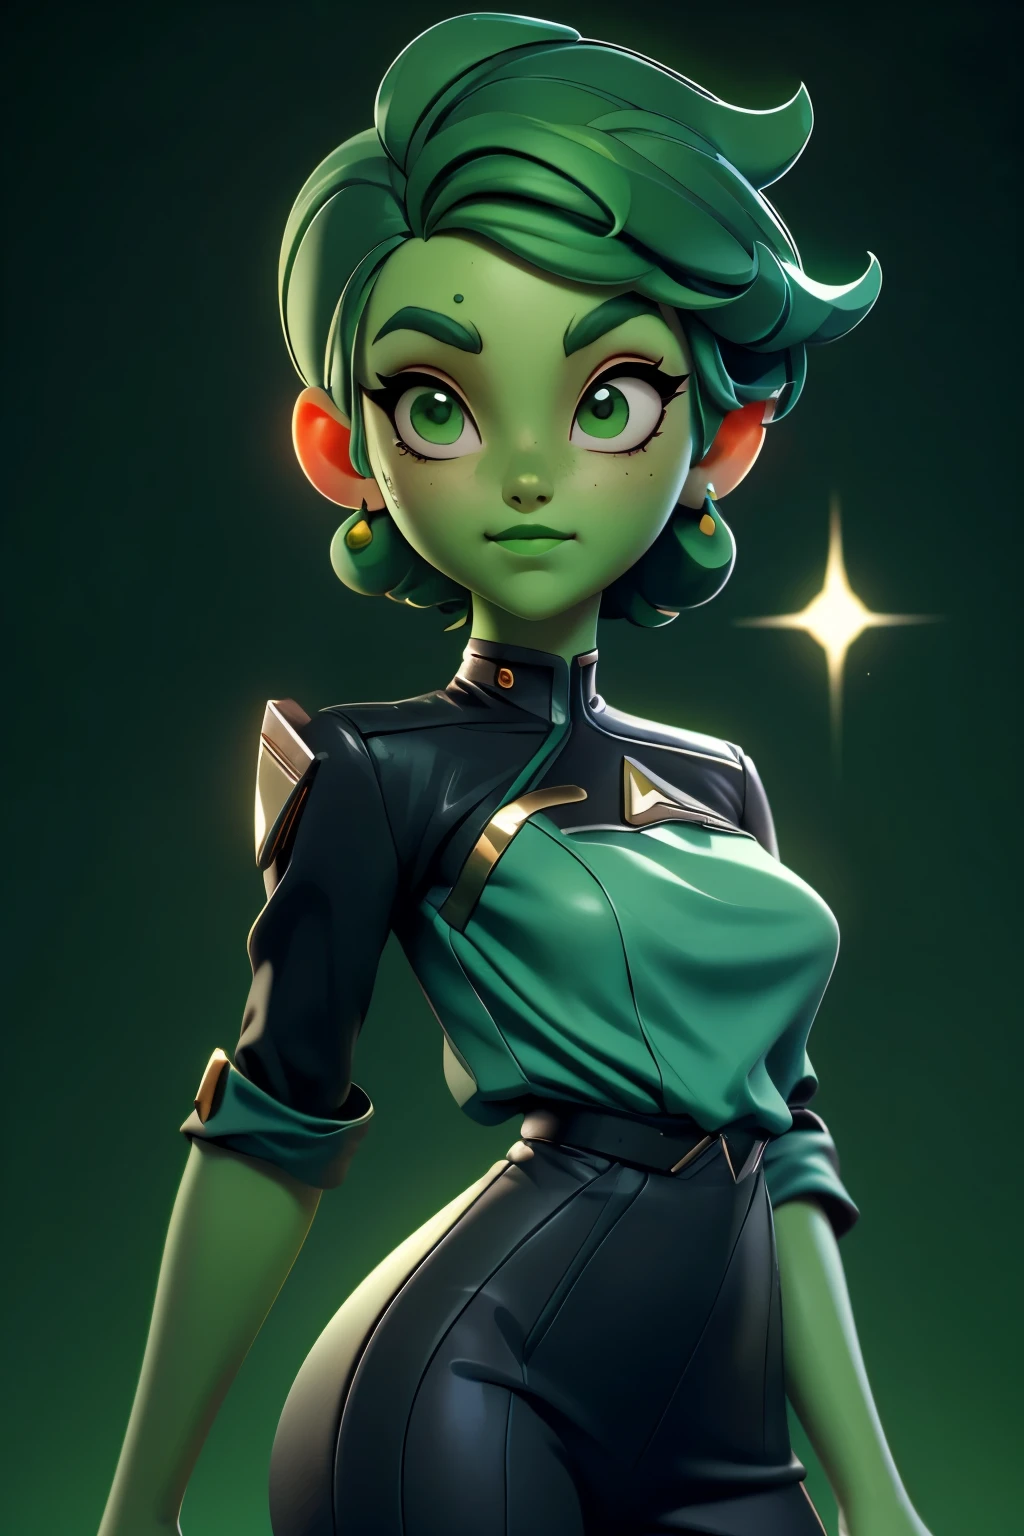 华丽的D&#39;vana, 星际迷航下层甲板, 绿皮肤, 非常短的绿色头发